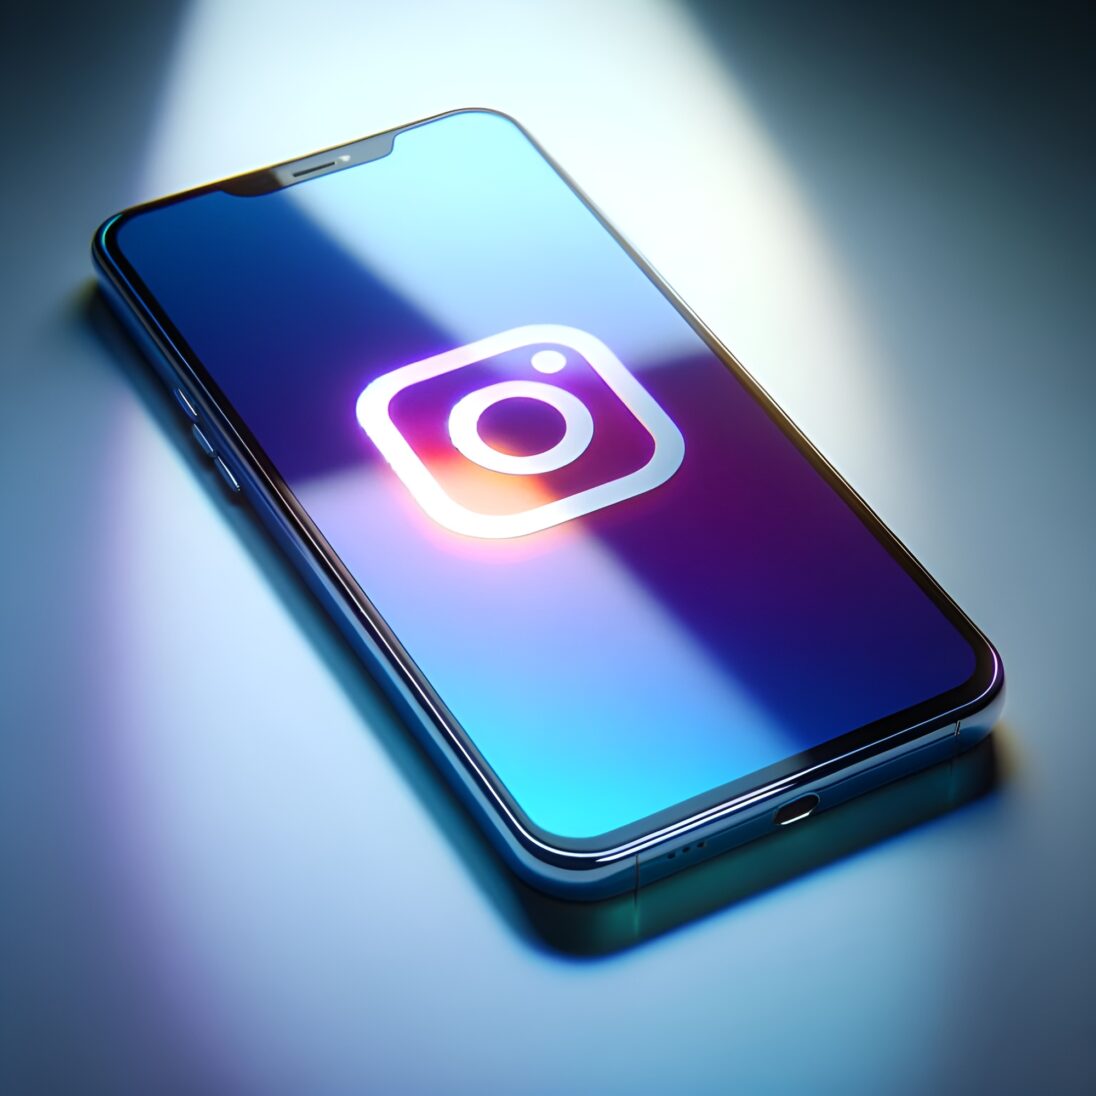 Instagram révolutionne la création de contenu : Découvrez ses nouvelles fonctionnalités innovantes